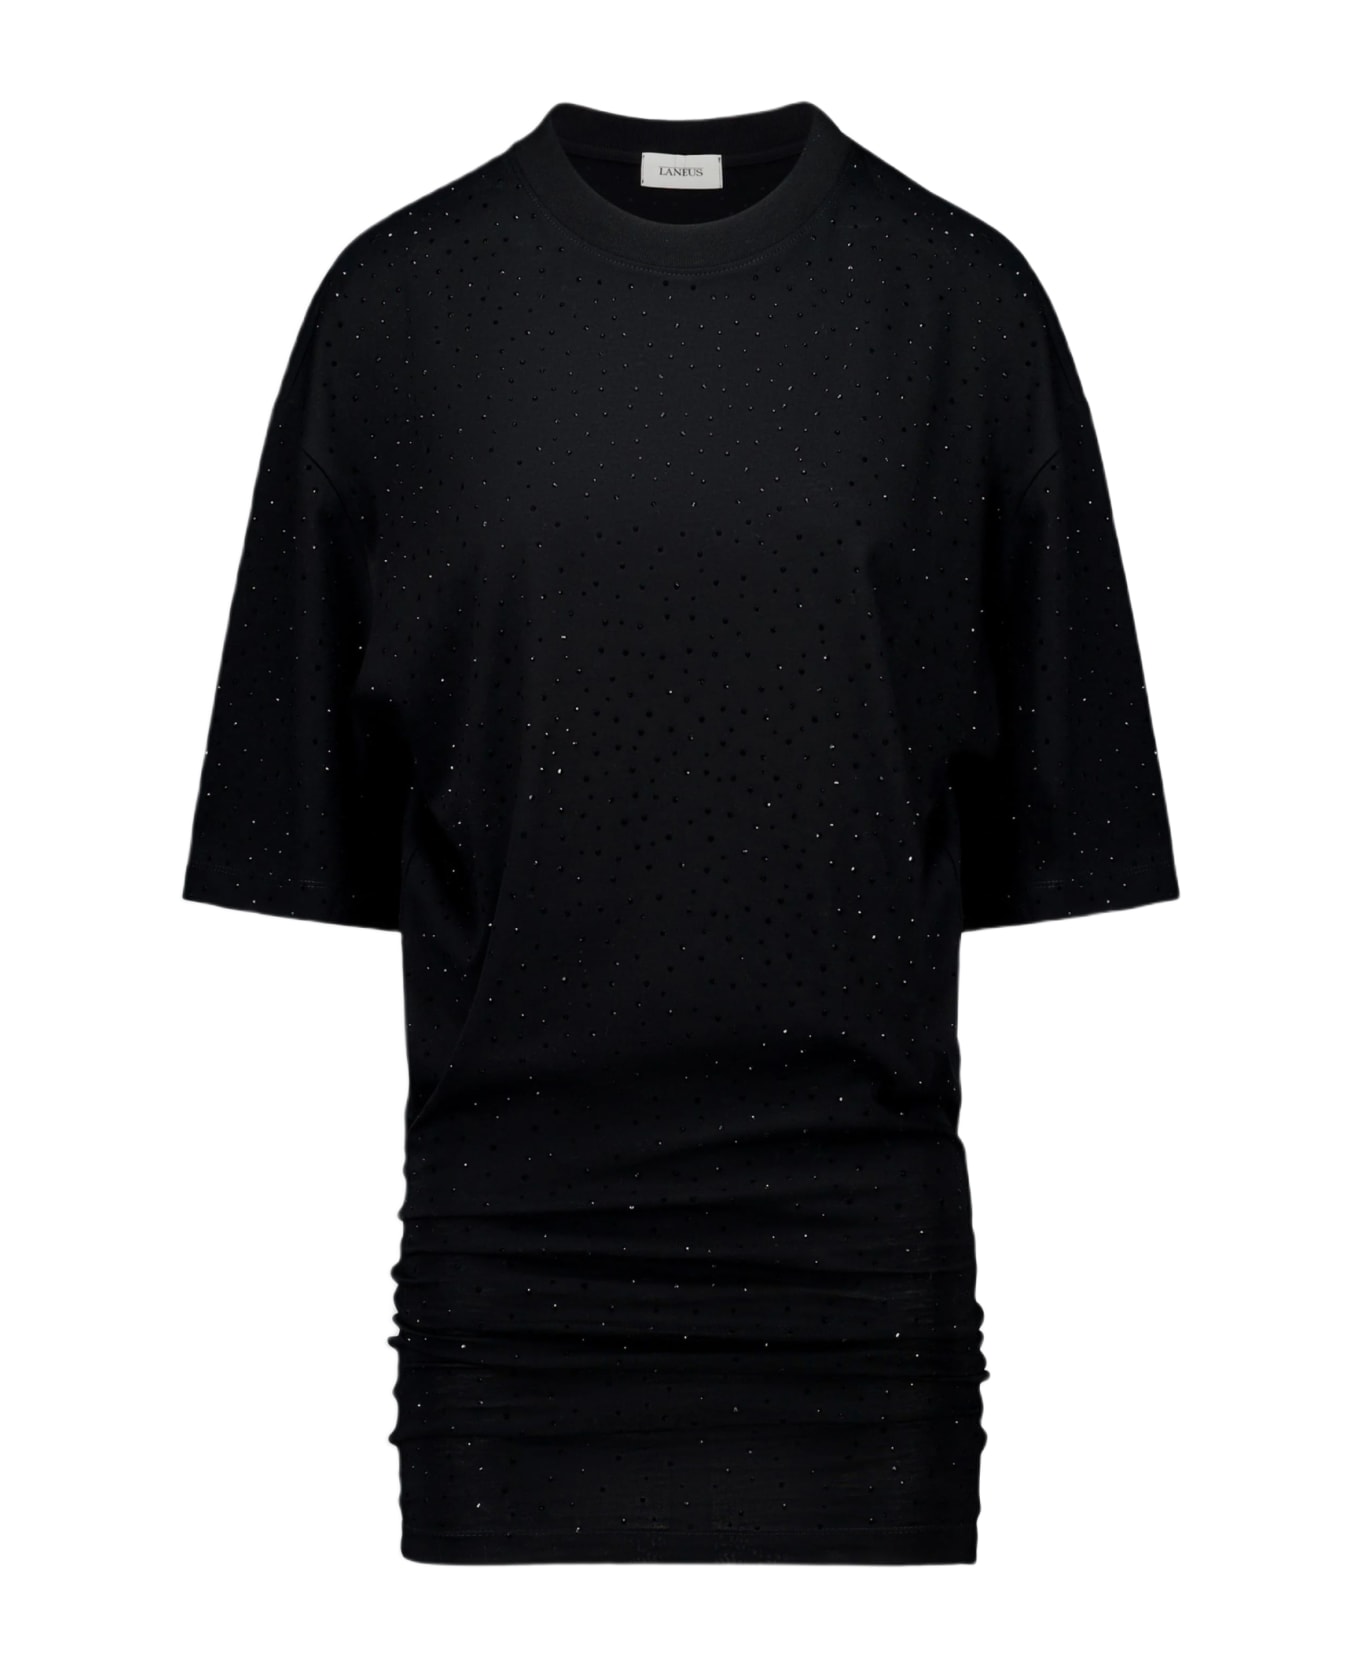 Laneus Jersey Dress Woman Black cotton mini dress with crystals - Jersey Mini Dress - Nero Tシャツ